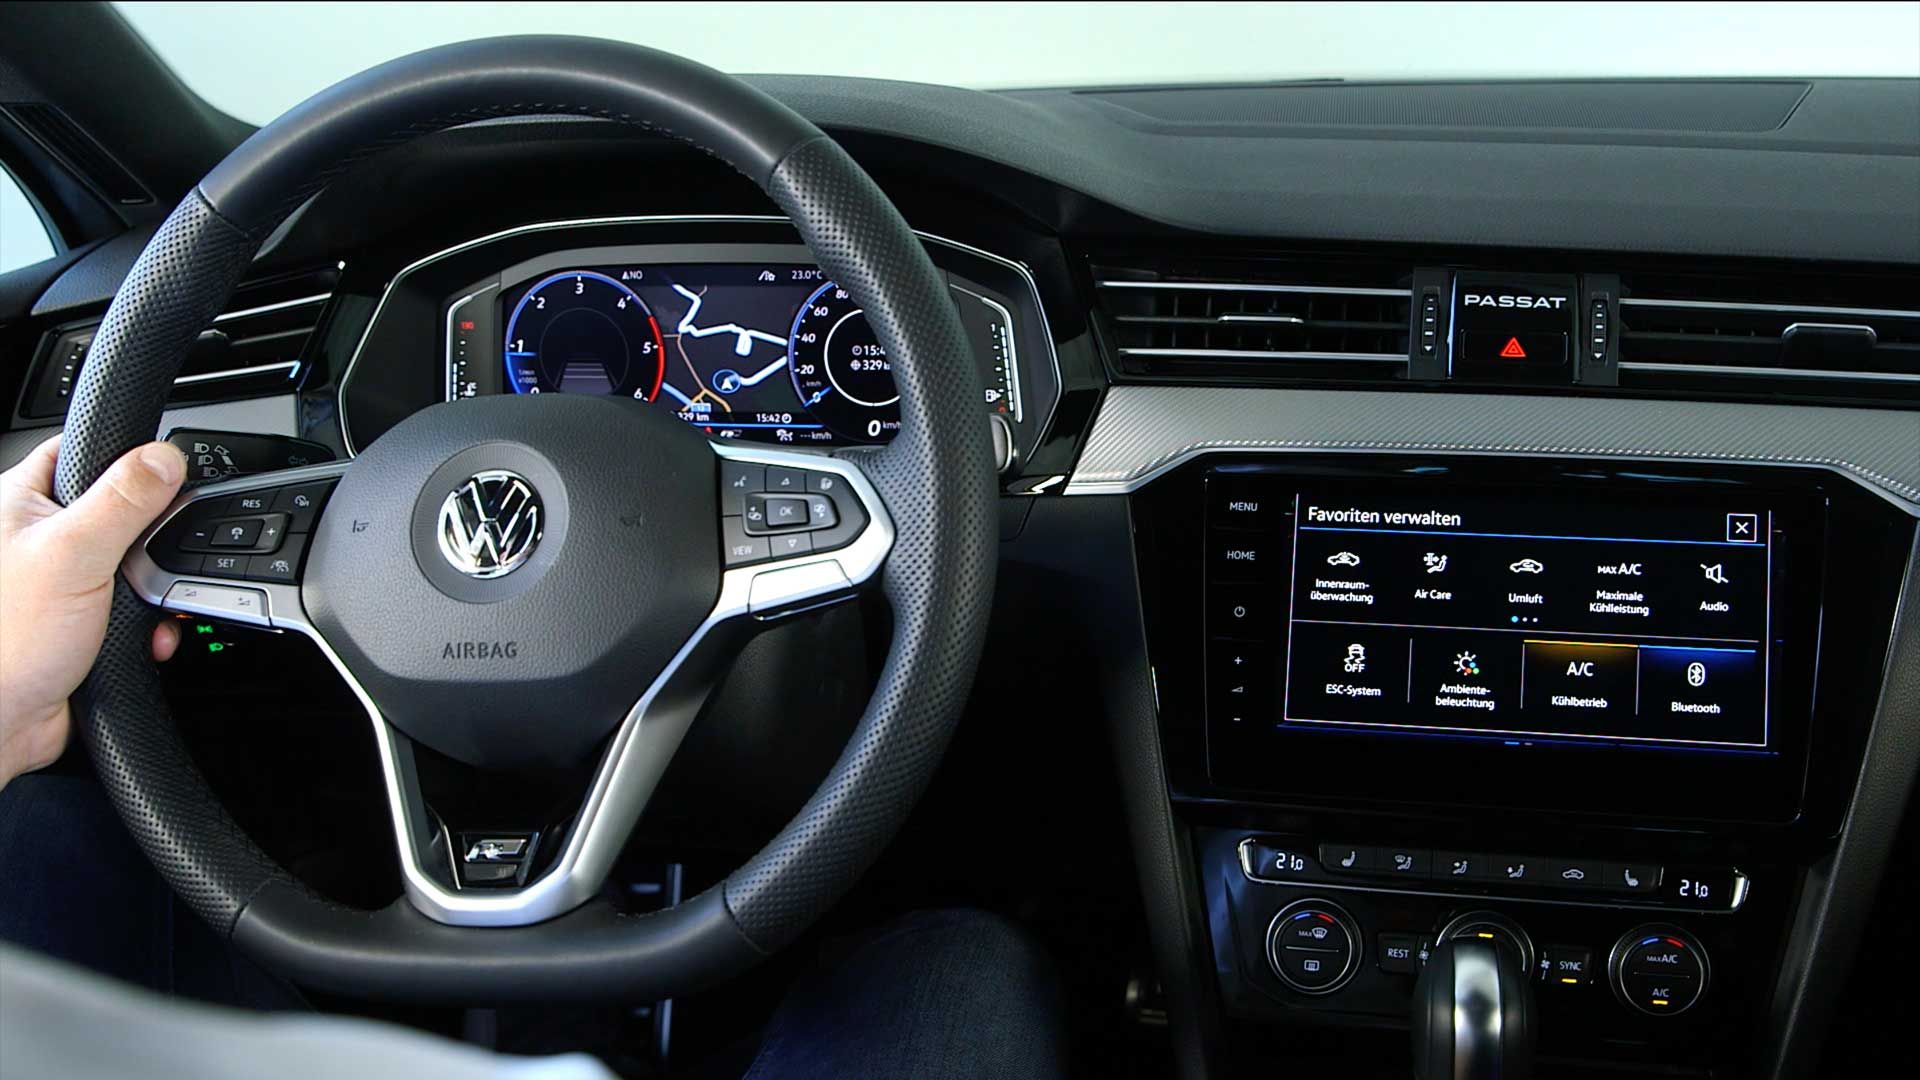 Abbild der Innenansicht von Volkswagen Lenkrad und Discovery Pro